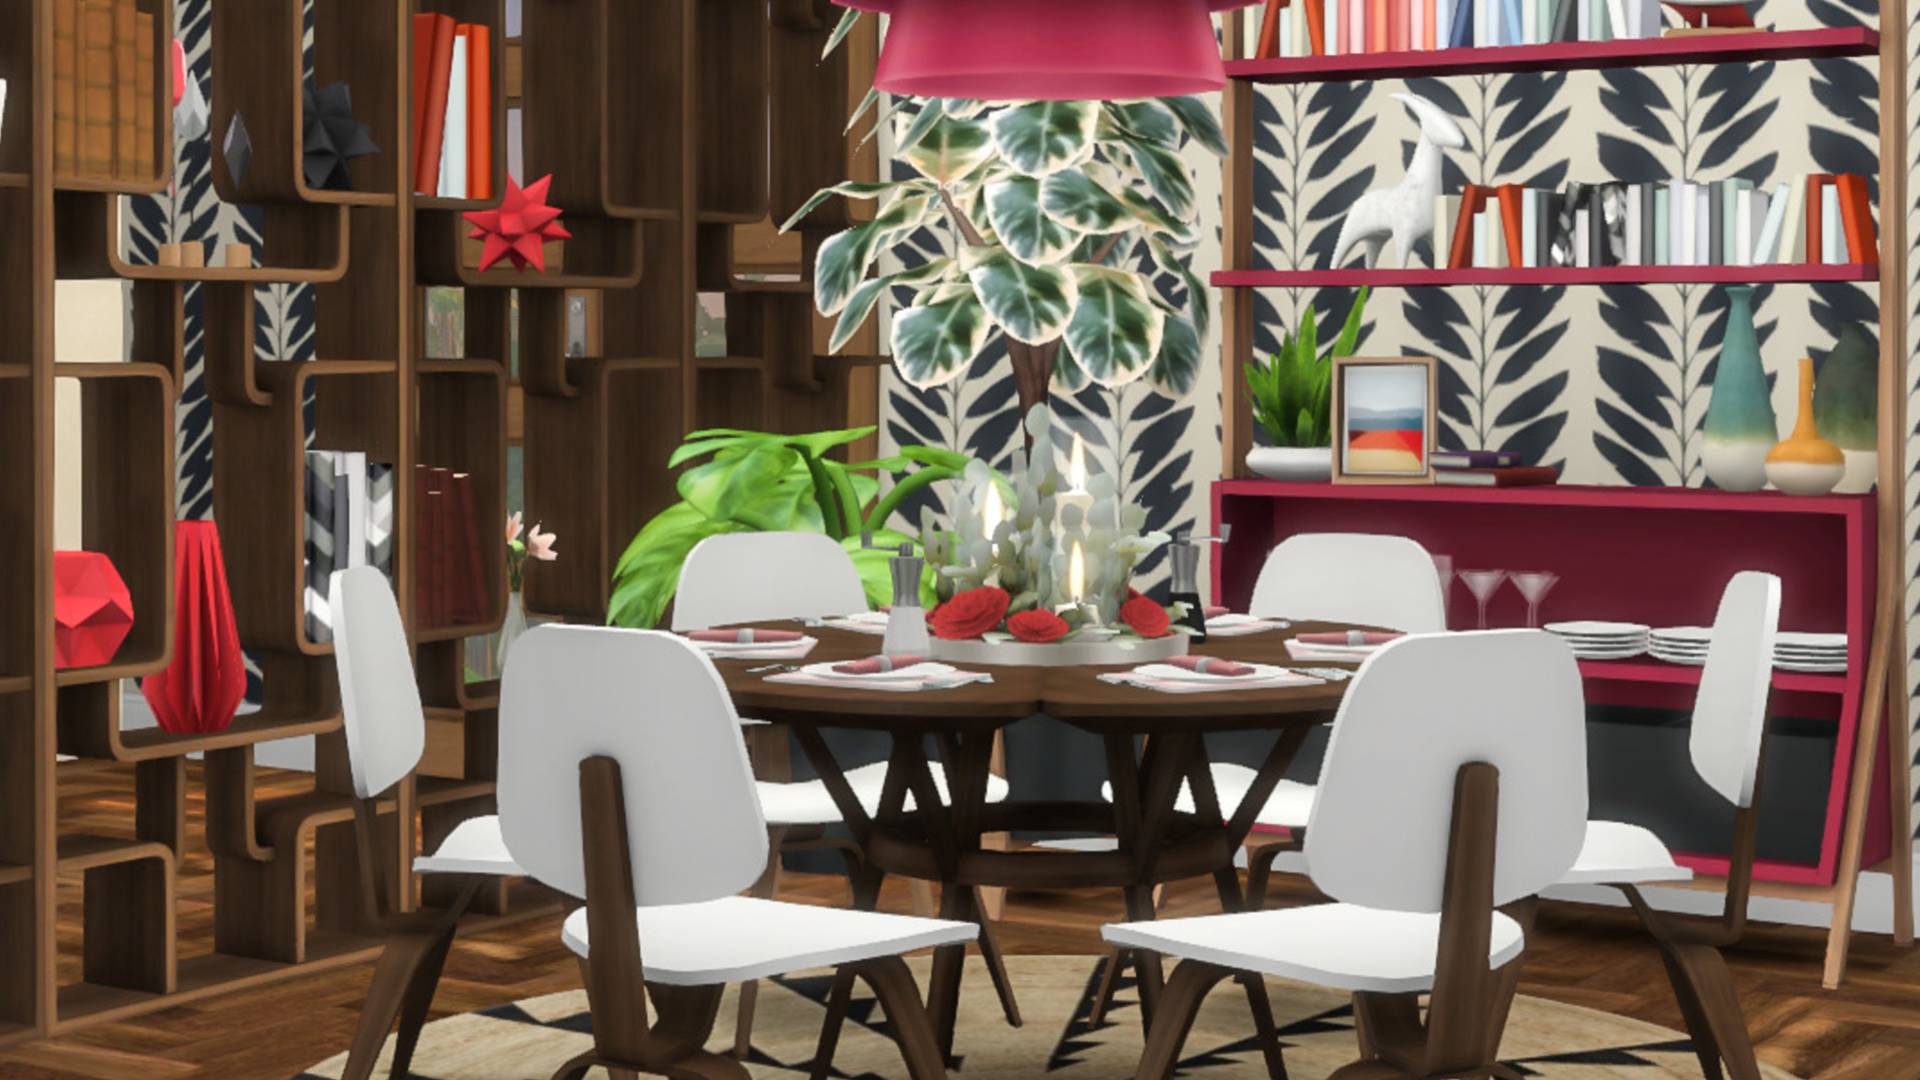 Sims 4 CC: un comedor amueblado con decoraciones y muebles llamativos y estampados